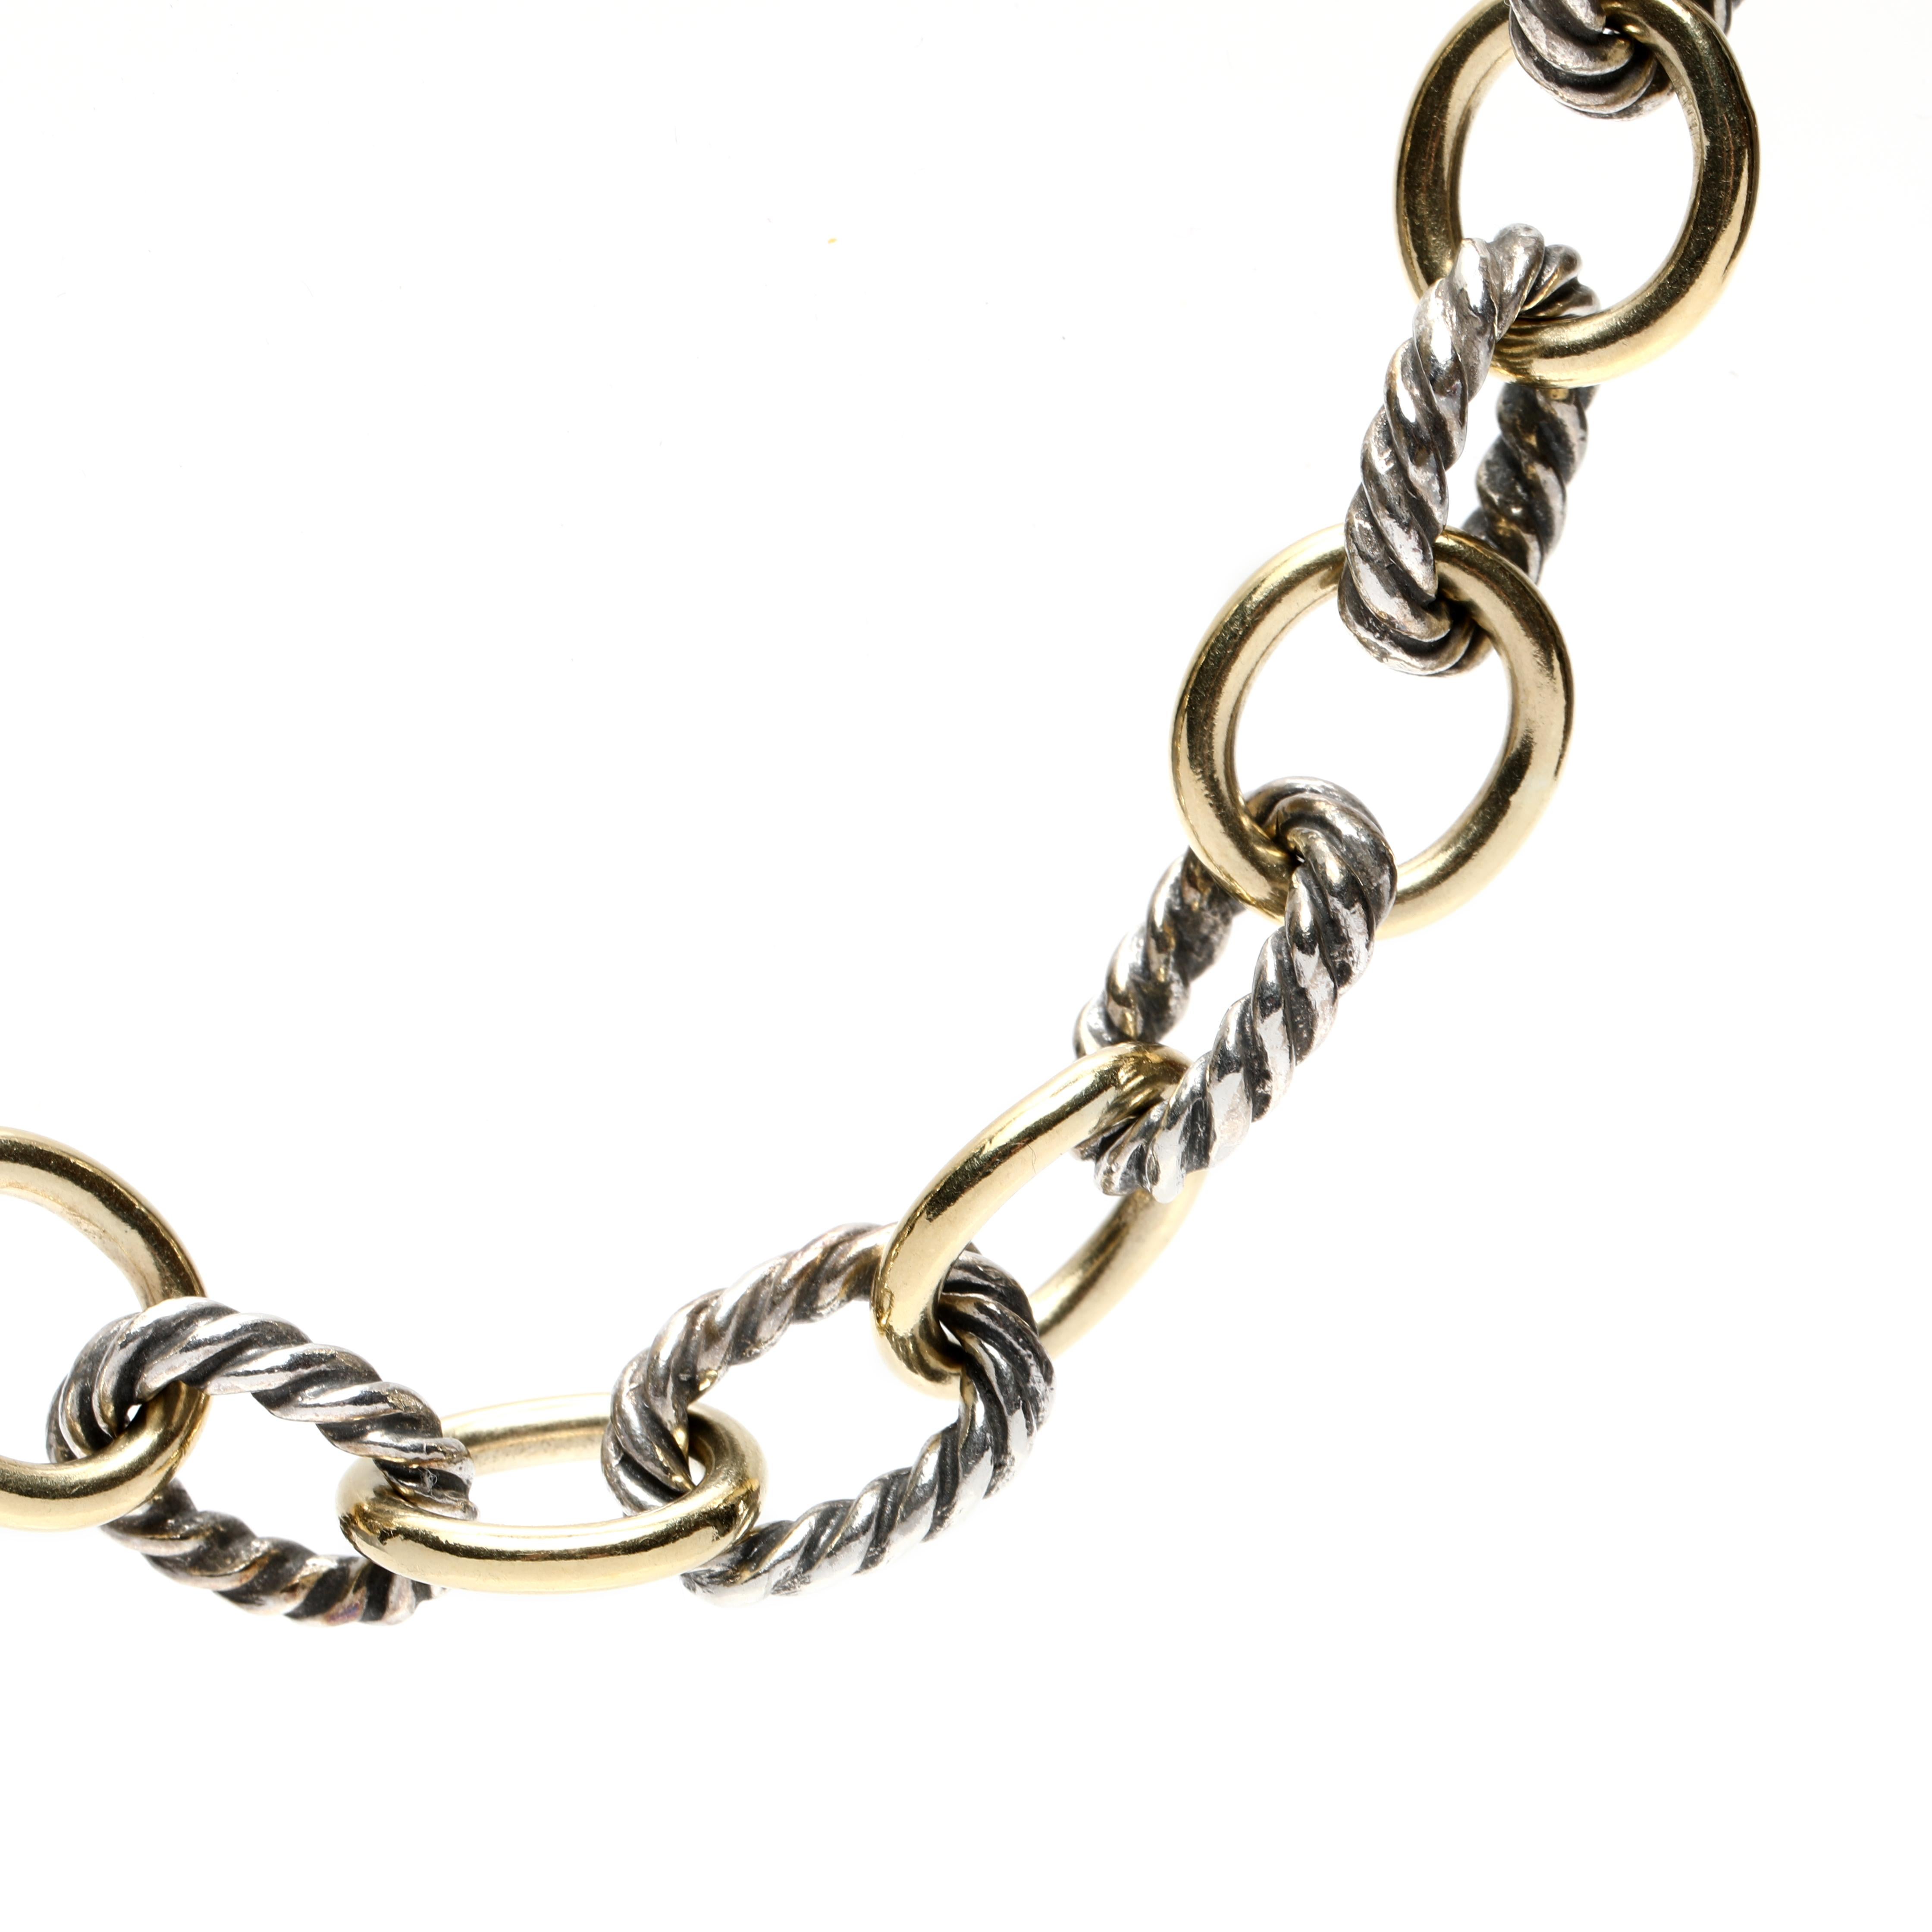 Diese exquisite David Yurman Cable Classics Medium Oval Link Chain ist in 18K Gelbgold und Sterlingsilber gefertigt. Diese zweifarbige, ovale Gliederkette bietet eine einzigartige Mischung aus Eleganz und Raffinesse, perfekt für jeden Anlass. Die